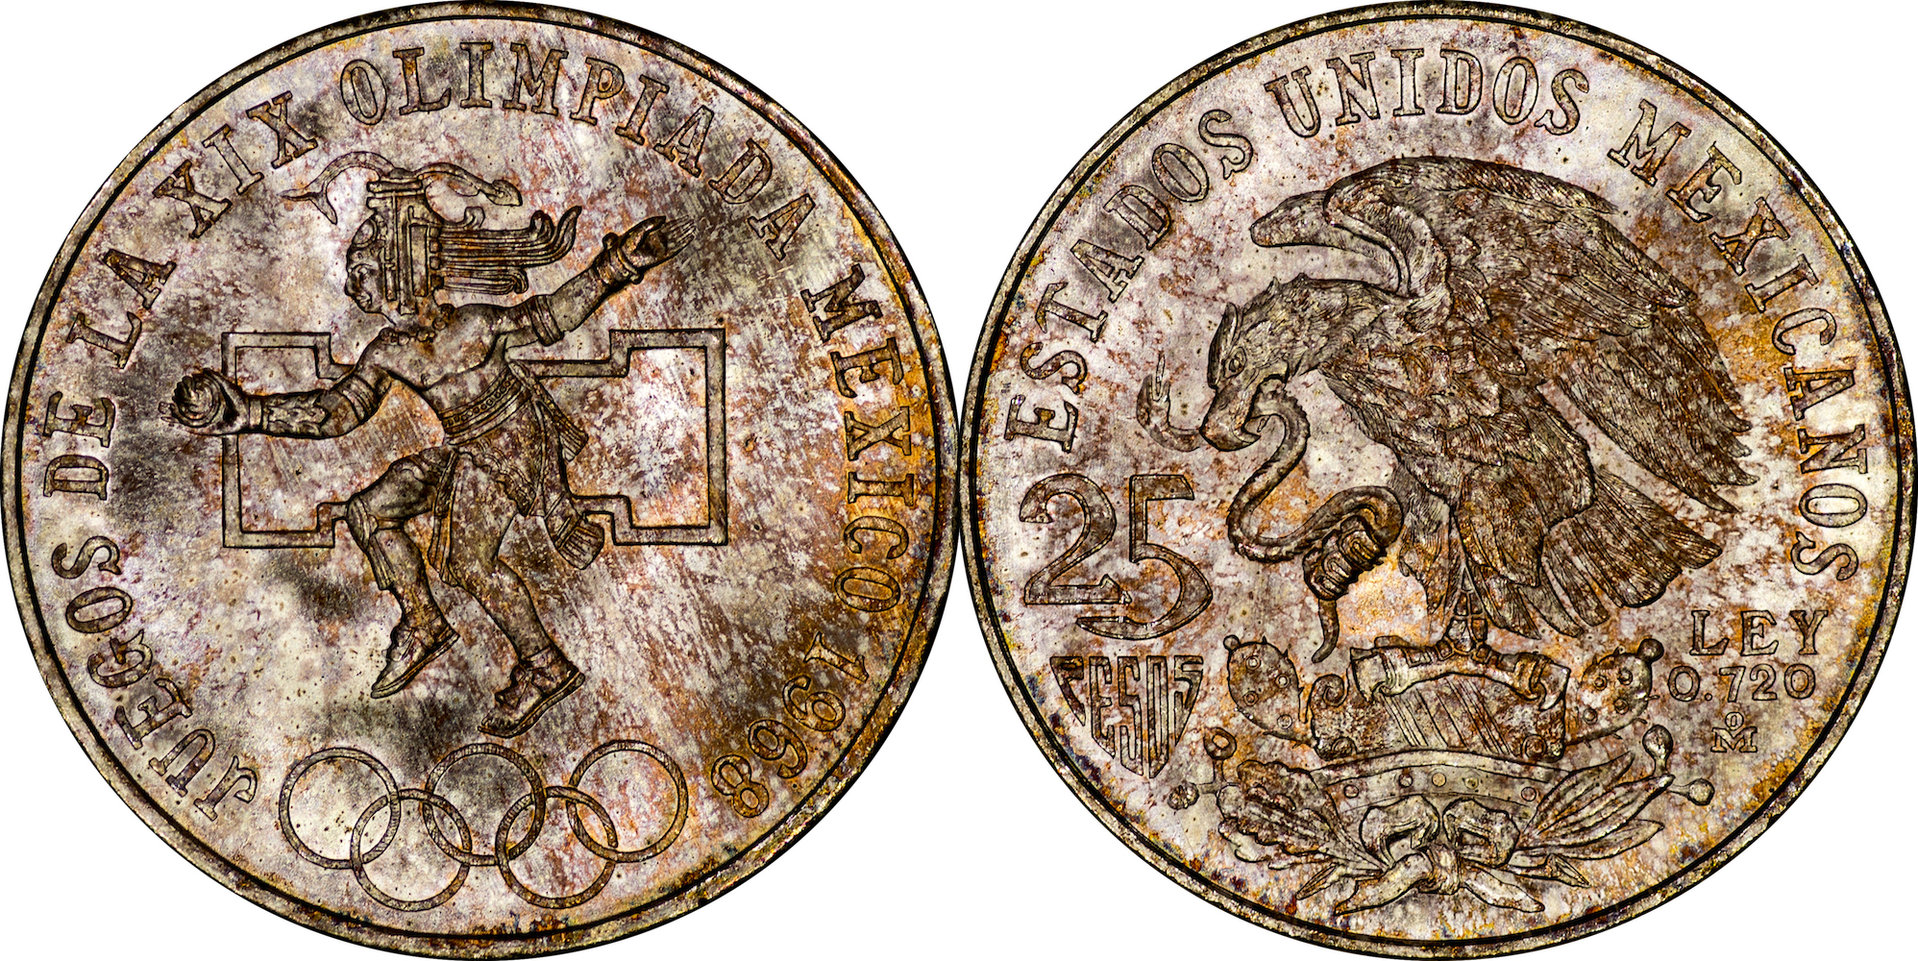 Mexico - 1968 25 Pesos 9.jpg